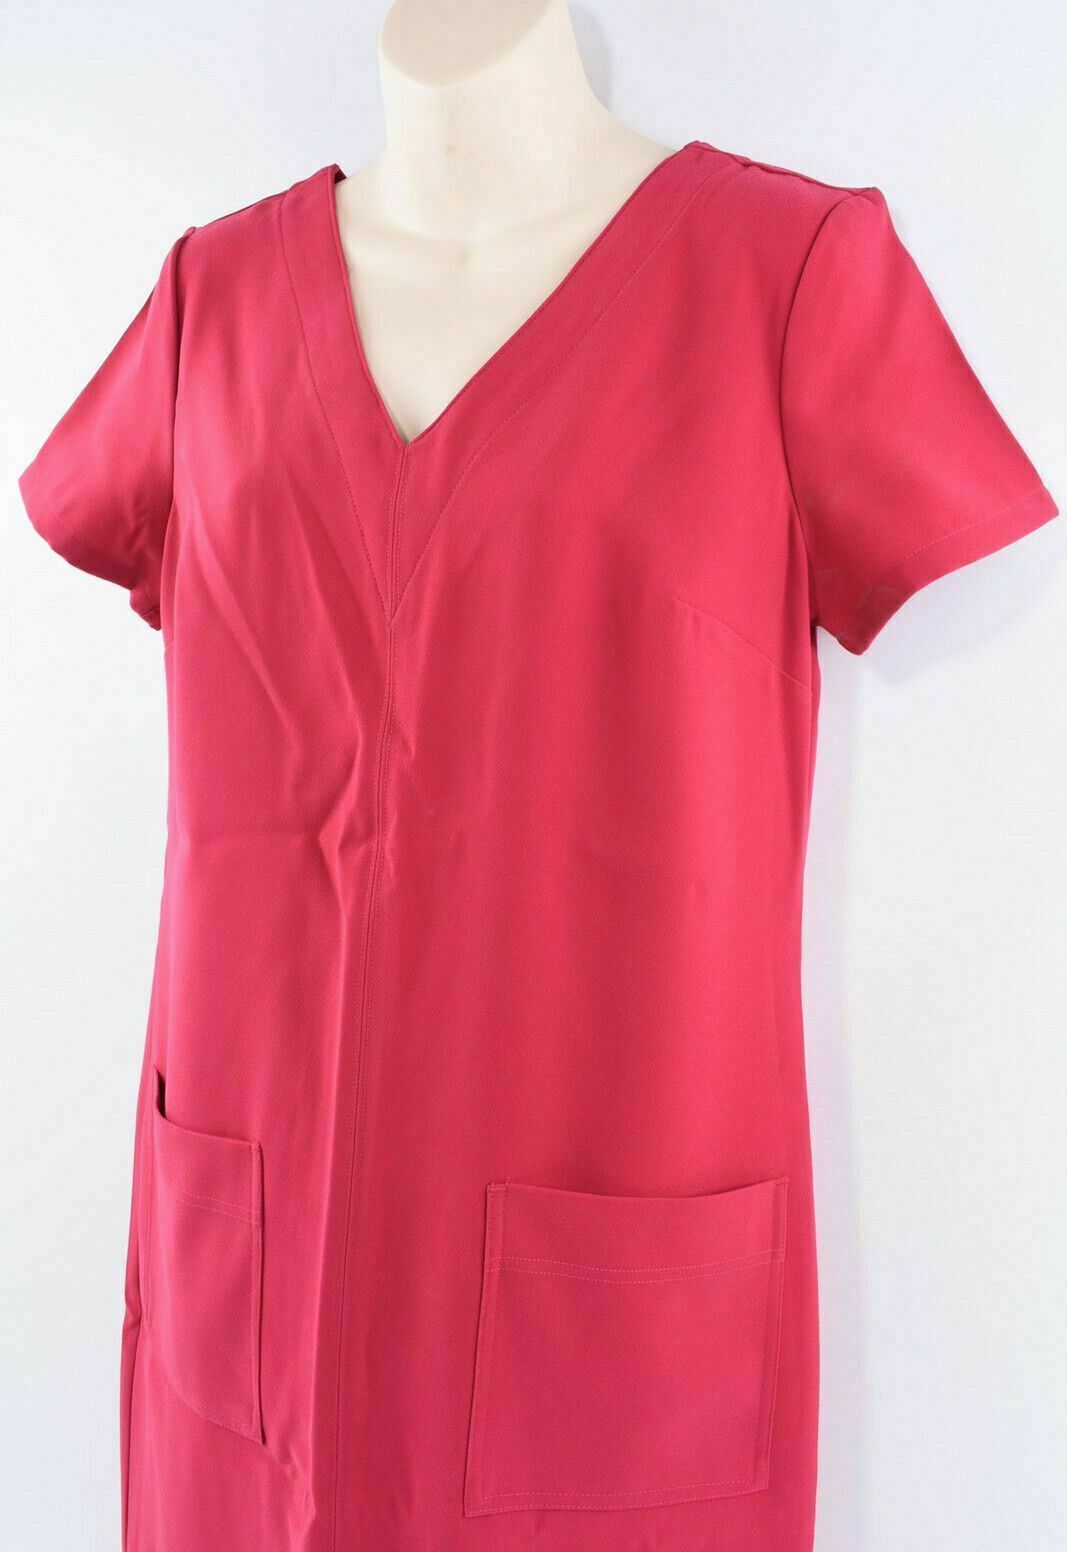 NEXT TAILORING Women's Pink Crepe Shift Dress, sizes UK 10 or UK 12